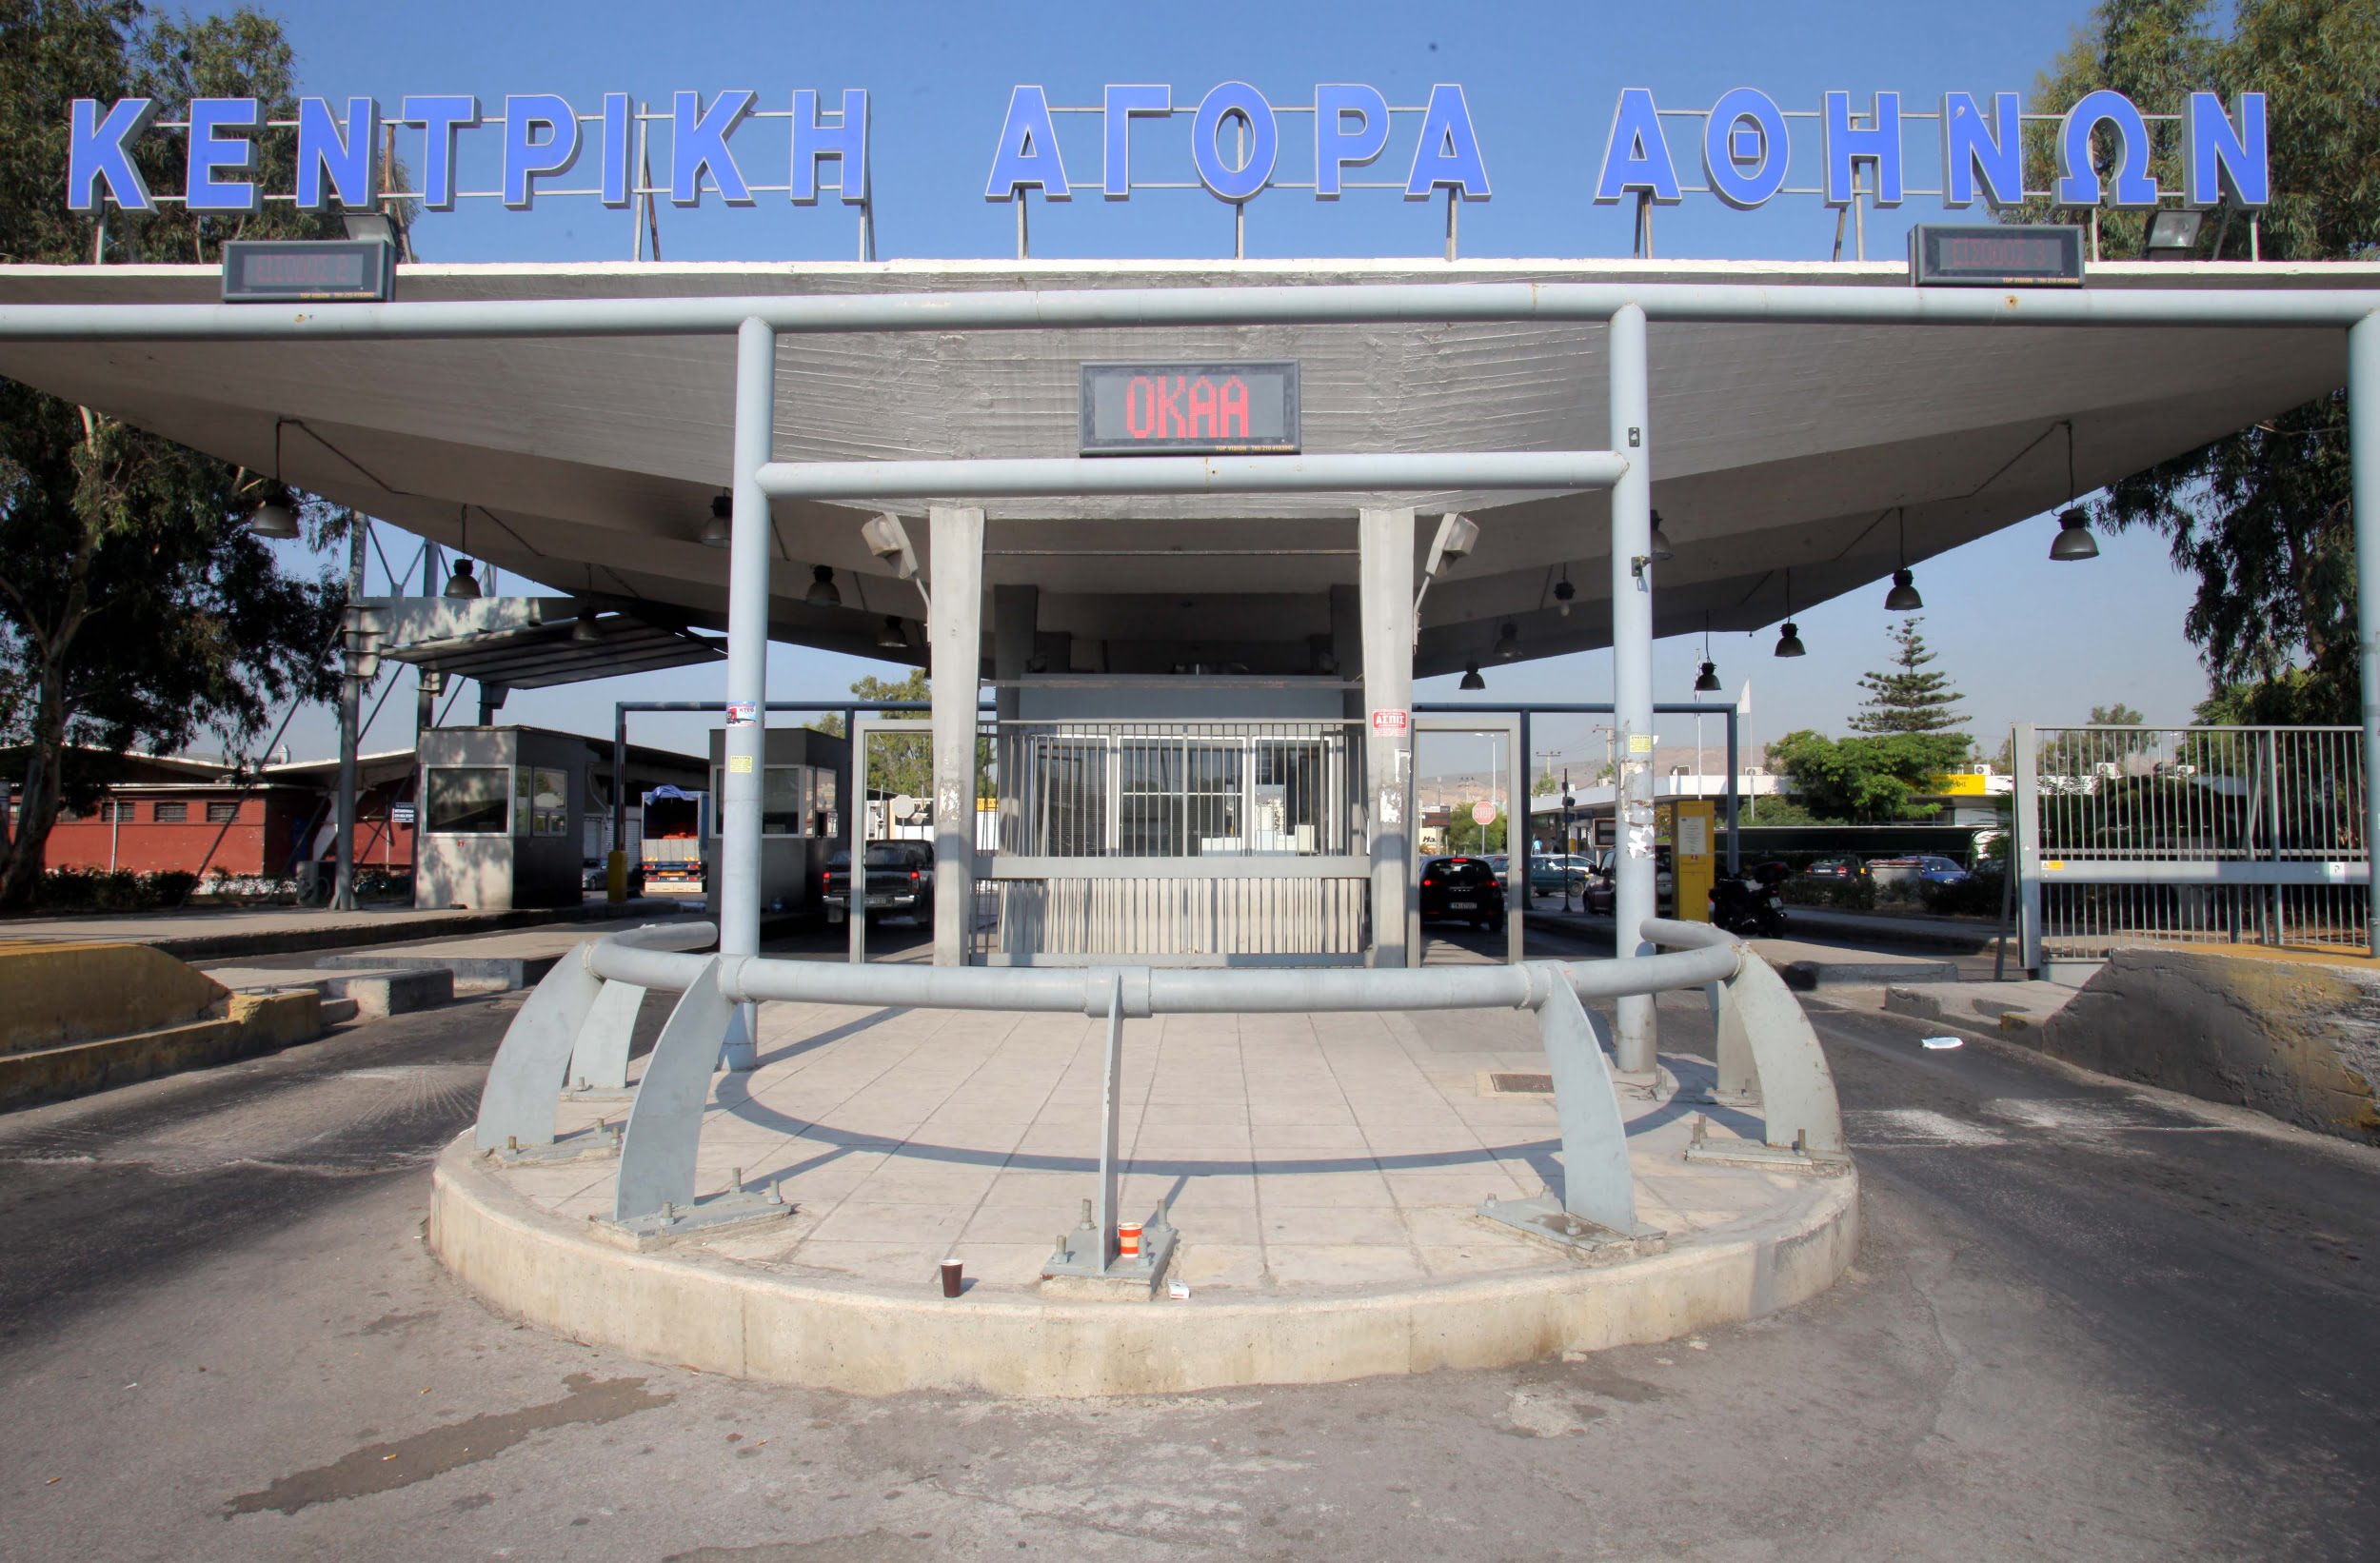 Αιτήσεις, άμεσα, για 10 θέσεις στην Κεντρική Αγορά Αθηνών